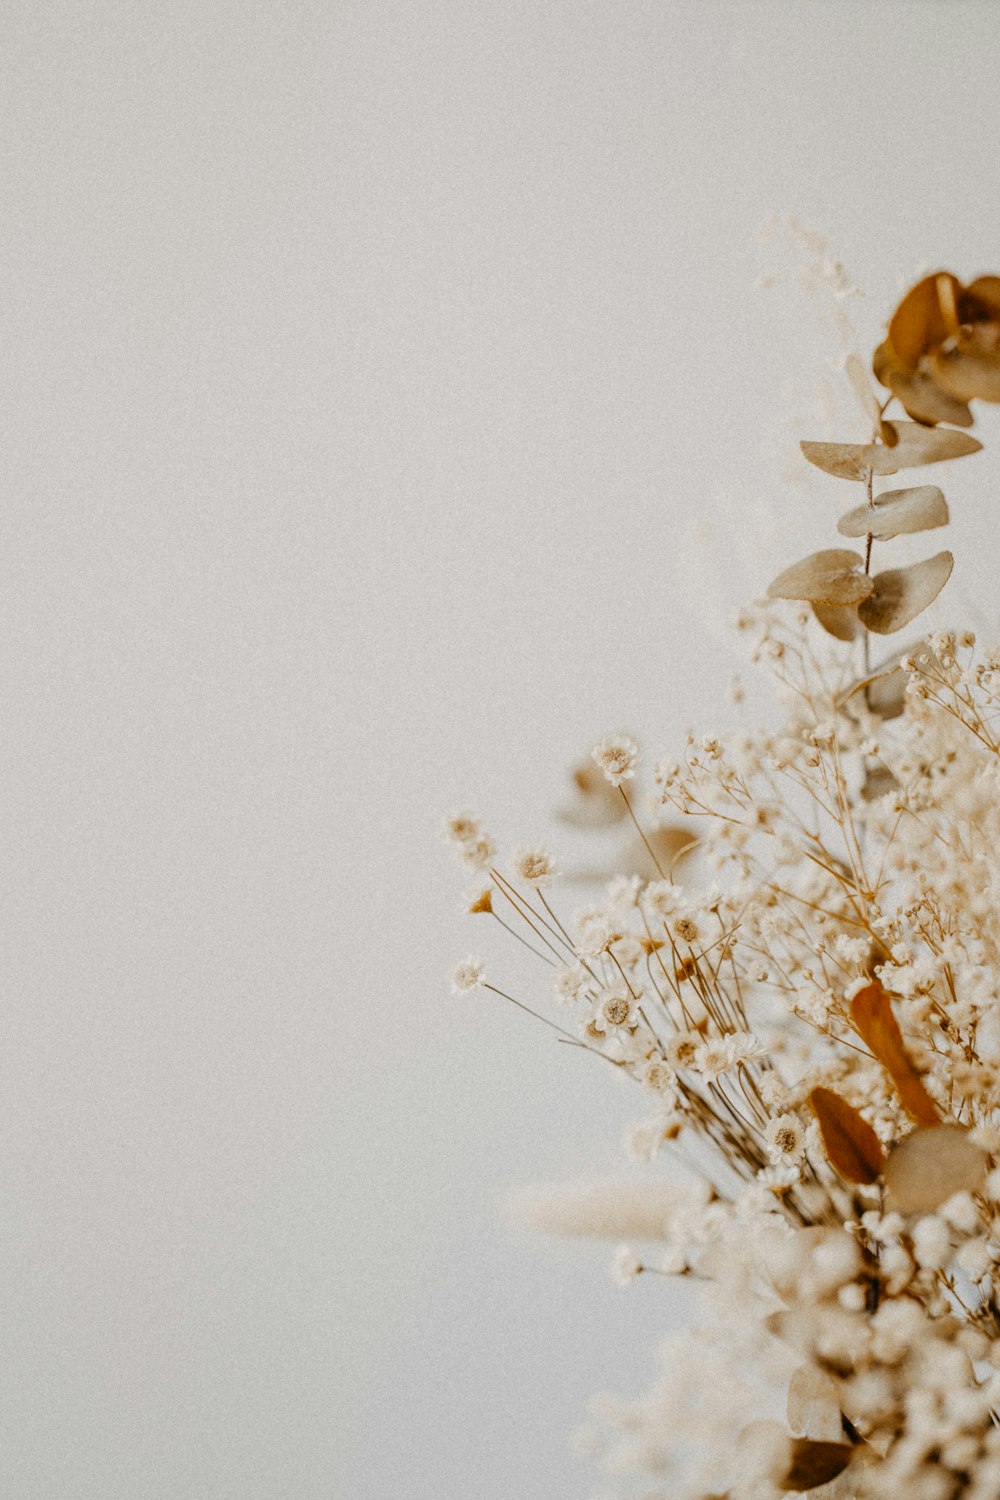 white flowers on white background photo – Free Flower Image on Unsplash